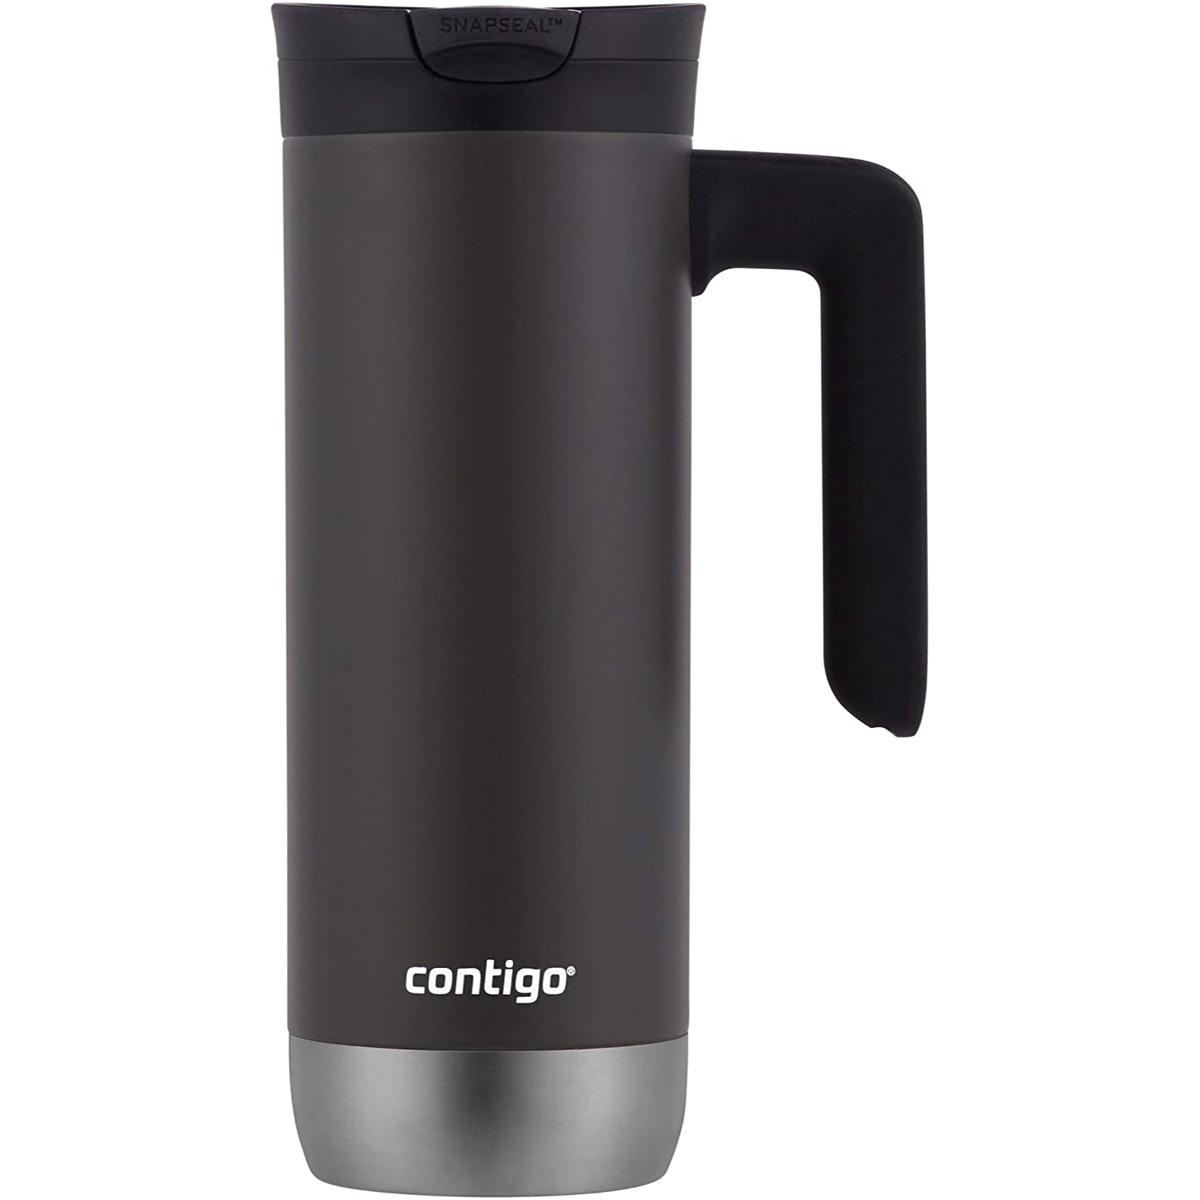 20oz Contigo Snapseal Insulated Travel Mug for $8.49